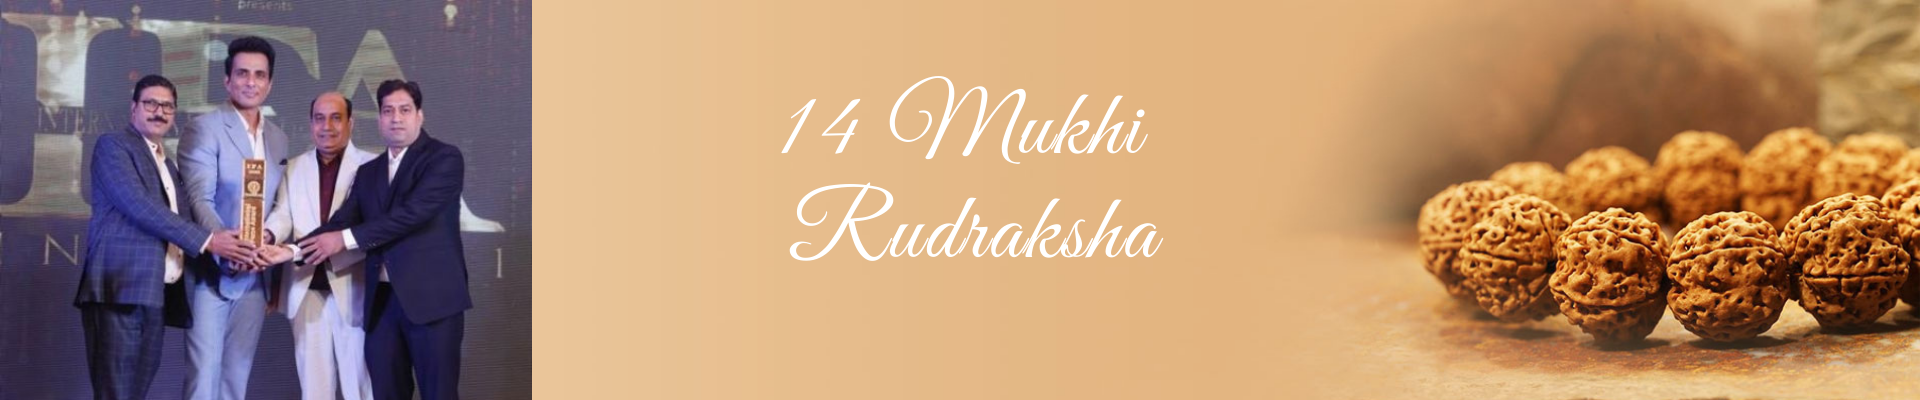 14 Mukhi Rudraksha | Fourteen Mukhi Rudraksha | 14 Mukhi Rudraksha Online | Fourteen Faced Mukhi Rudraksha Online | 14 Faced Mukhi Rudraksha Online |  Nepali 14 Mukhi Rudraksha Online |